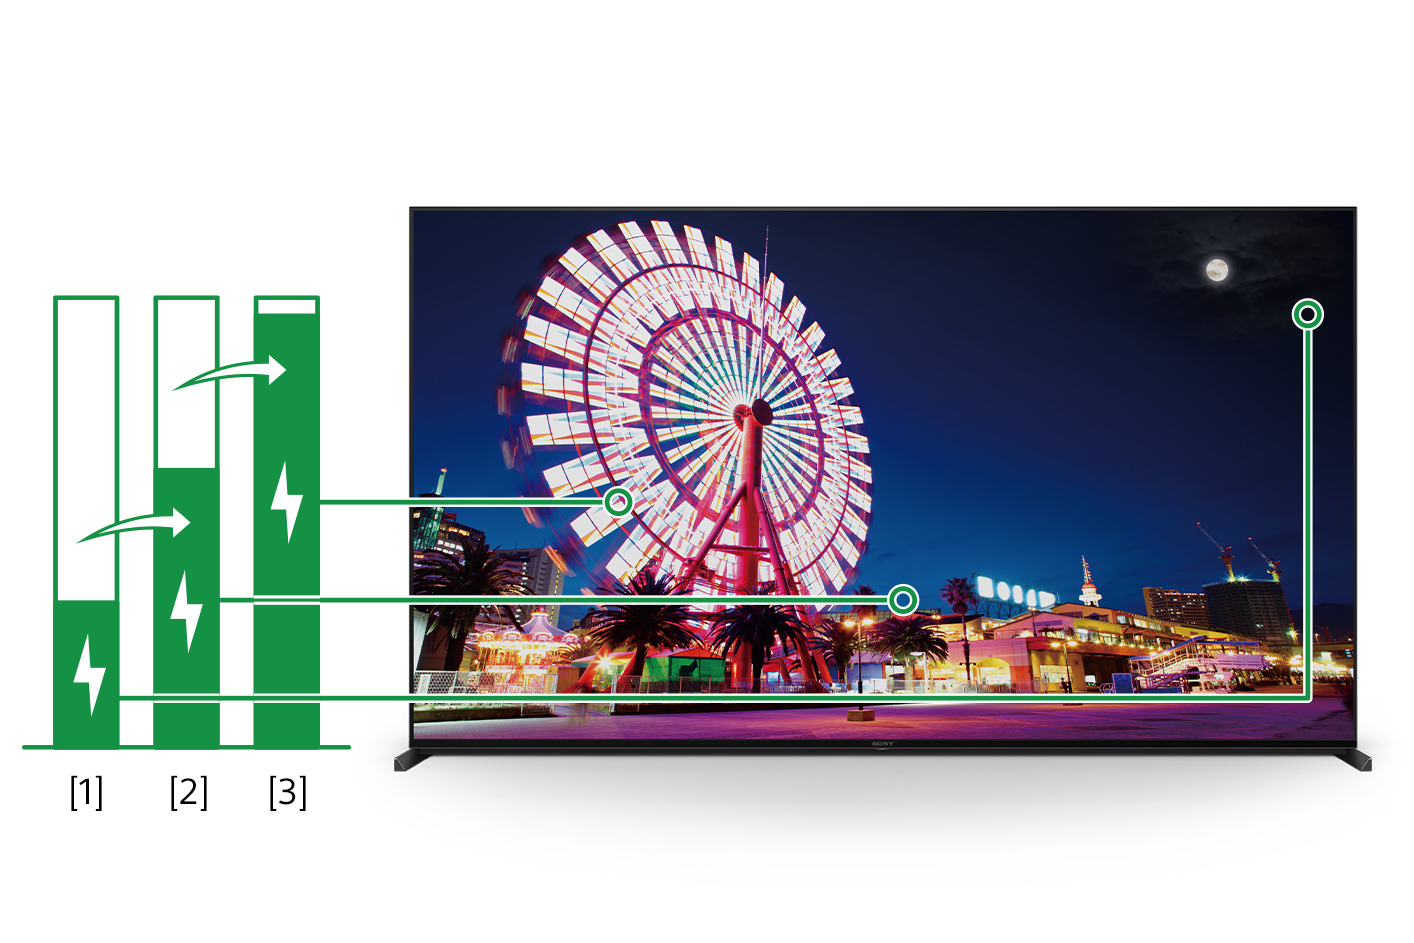 תמונה של מסך טלוויזיה ושלושה תרשימי עמודות המציגים, במרווחים הולכים וגדלים, את צריכת האנרגיה בהתאם לבהירות התמונה במסך.